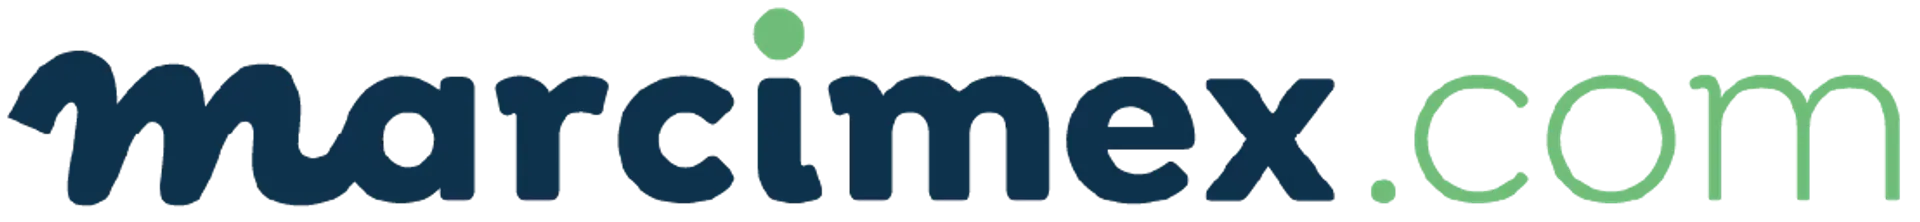 MARCIMEX logo